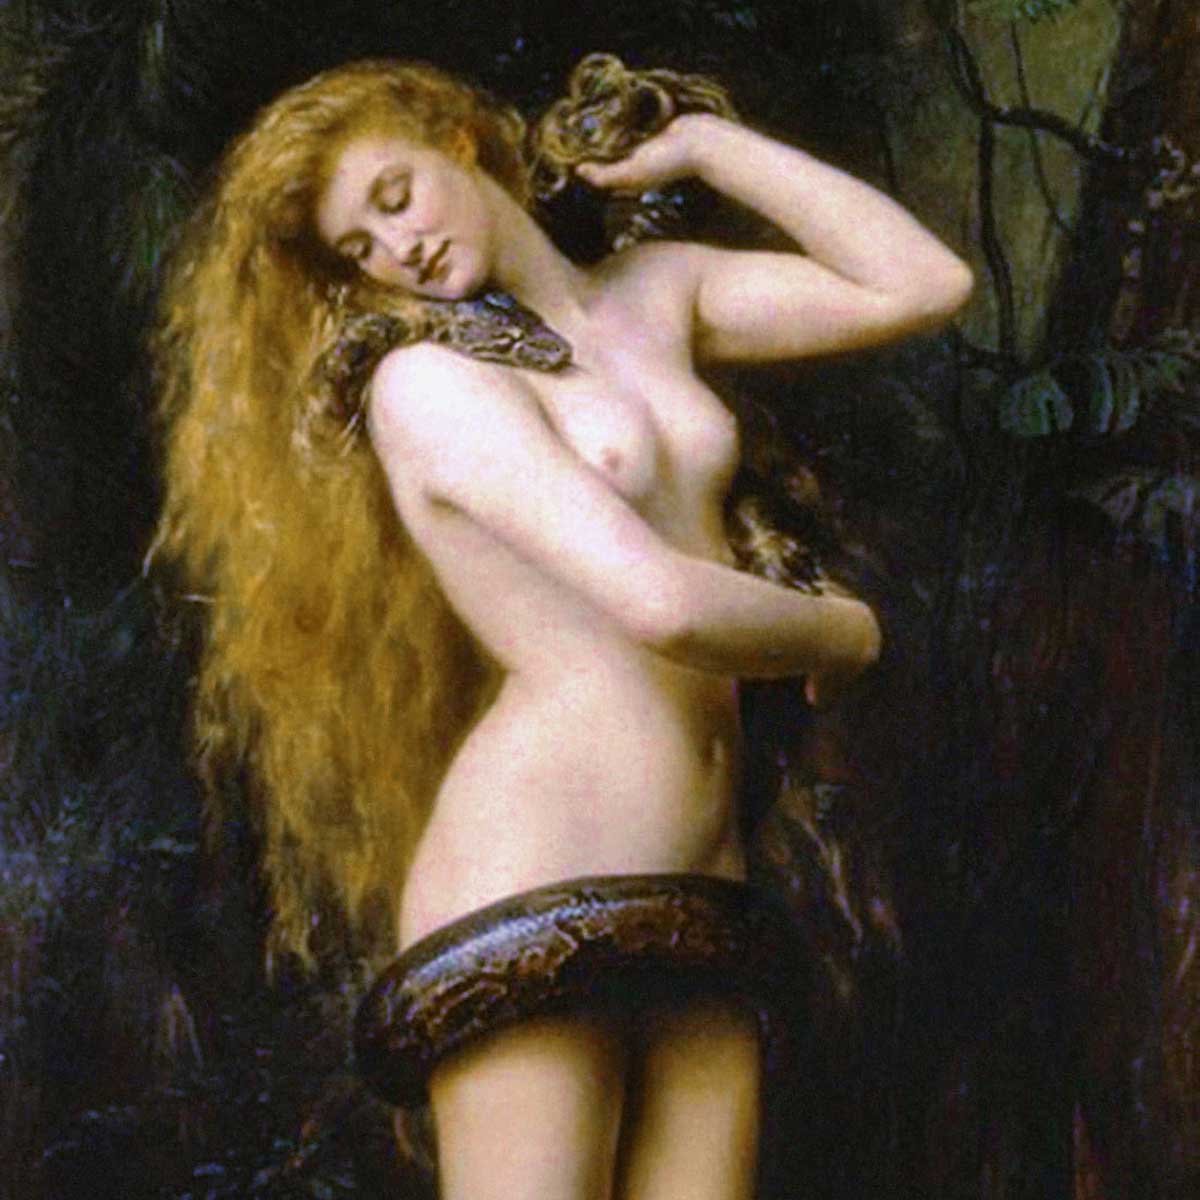 Lilith según algunas interpretaciones de la Torá, fue la primera mujer creada por Dios.